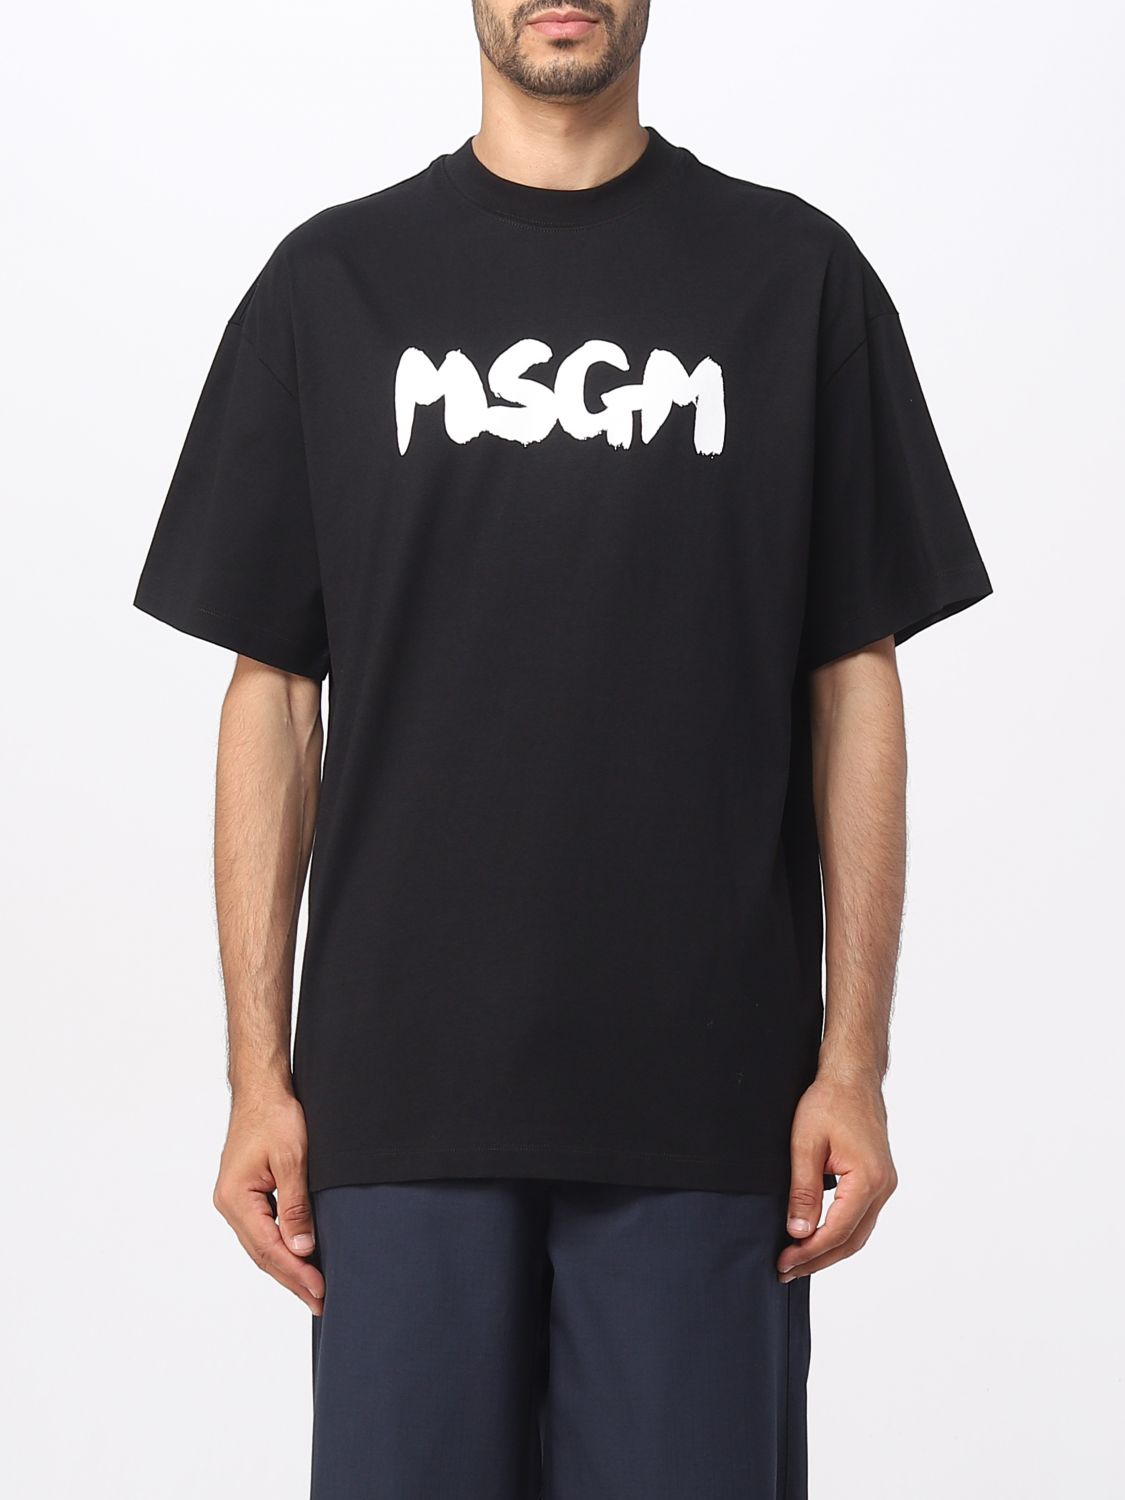 MSGM T-SHIRT MSGM MEN COLOR BLACK,E61560002